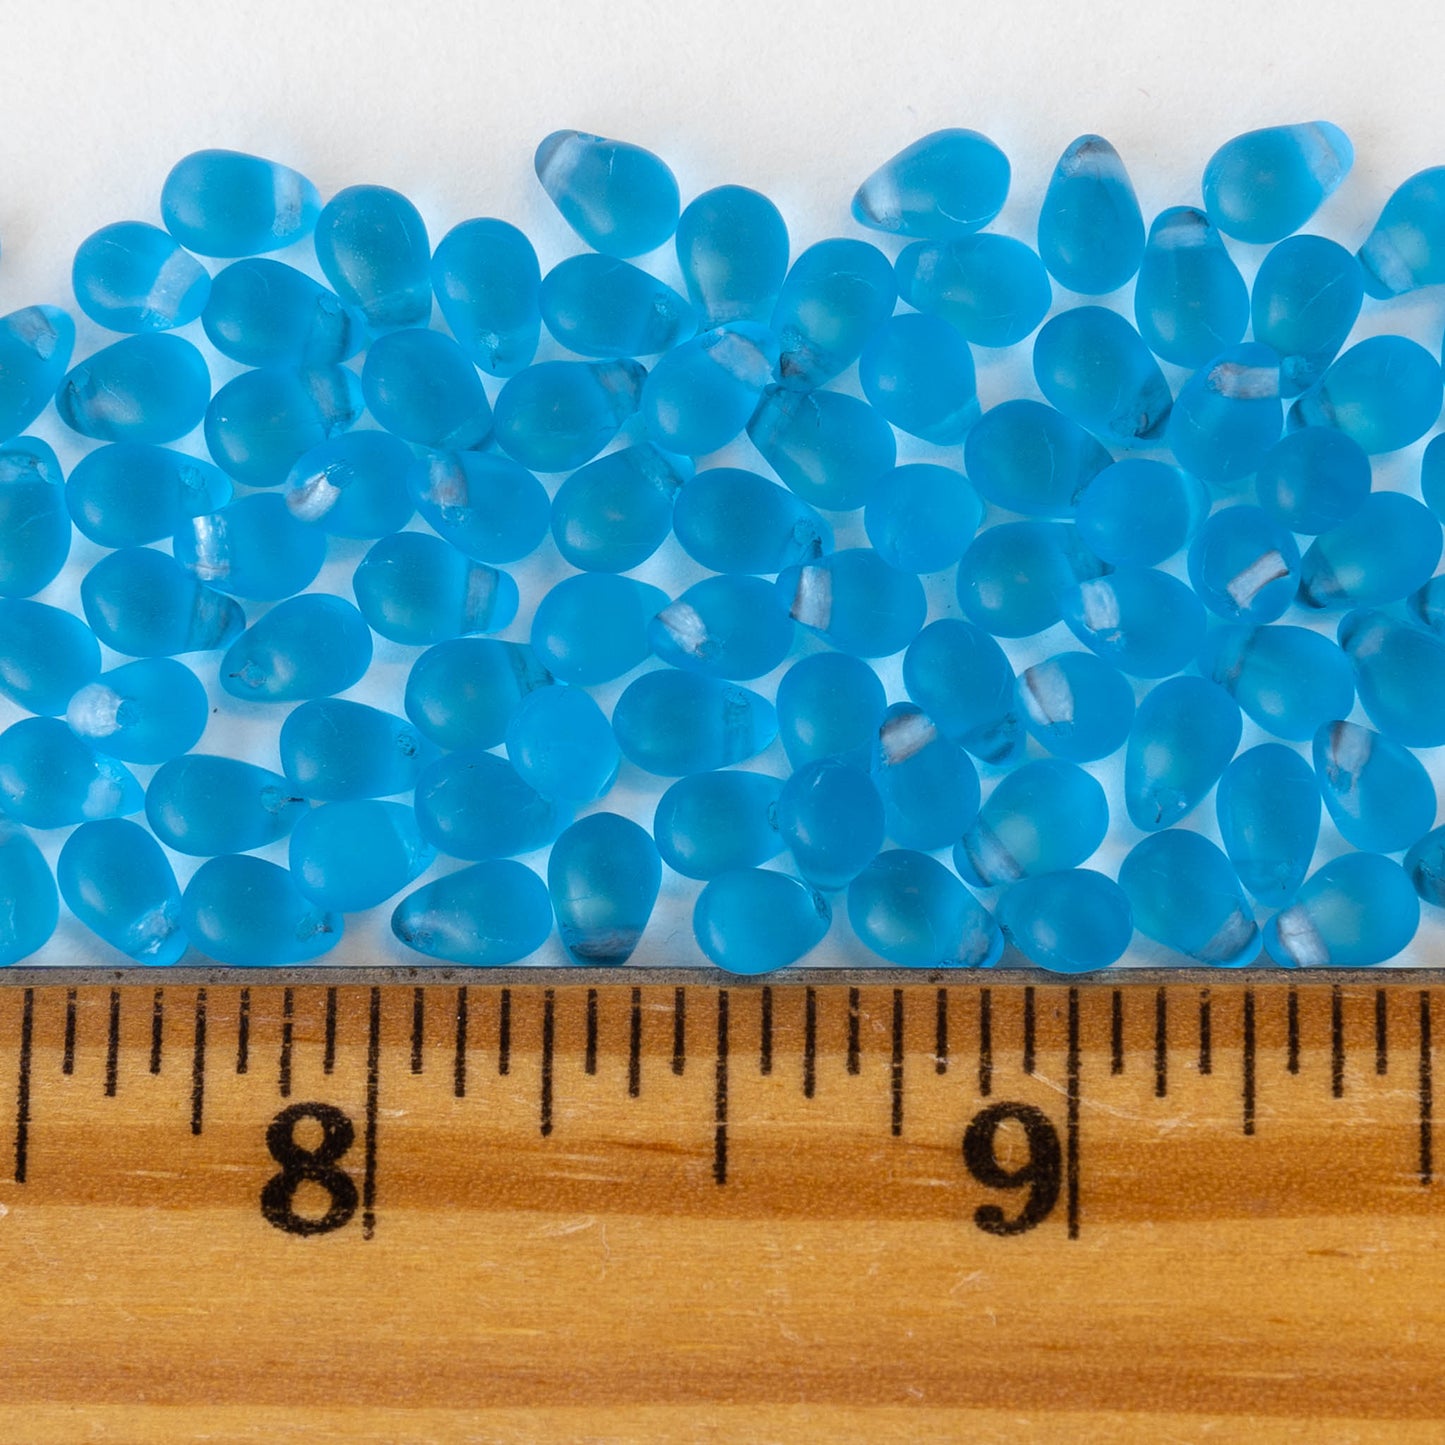 4x6mm Glass Teardrop Beads - Light Azure Blue Matte - 100 Beads